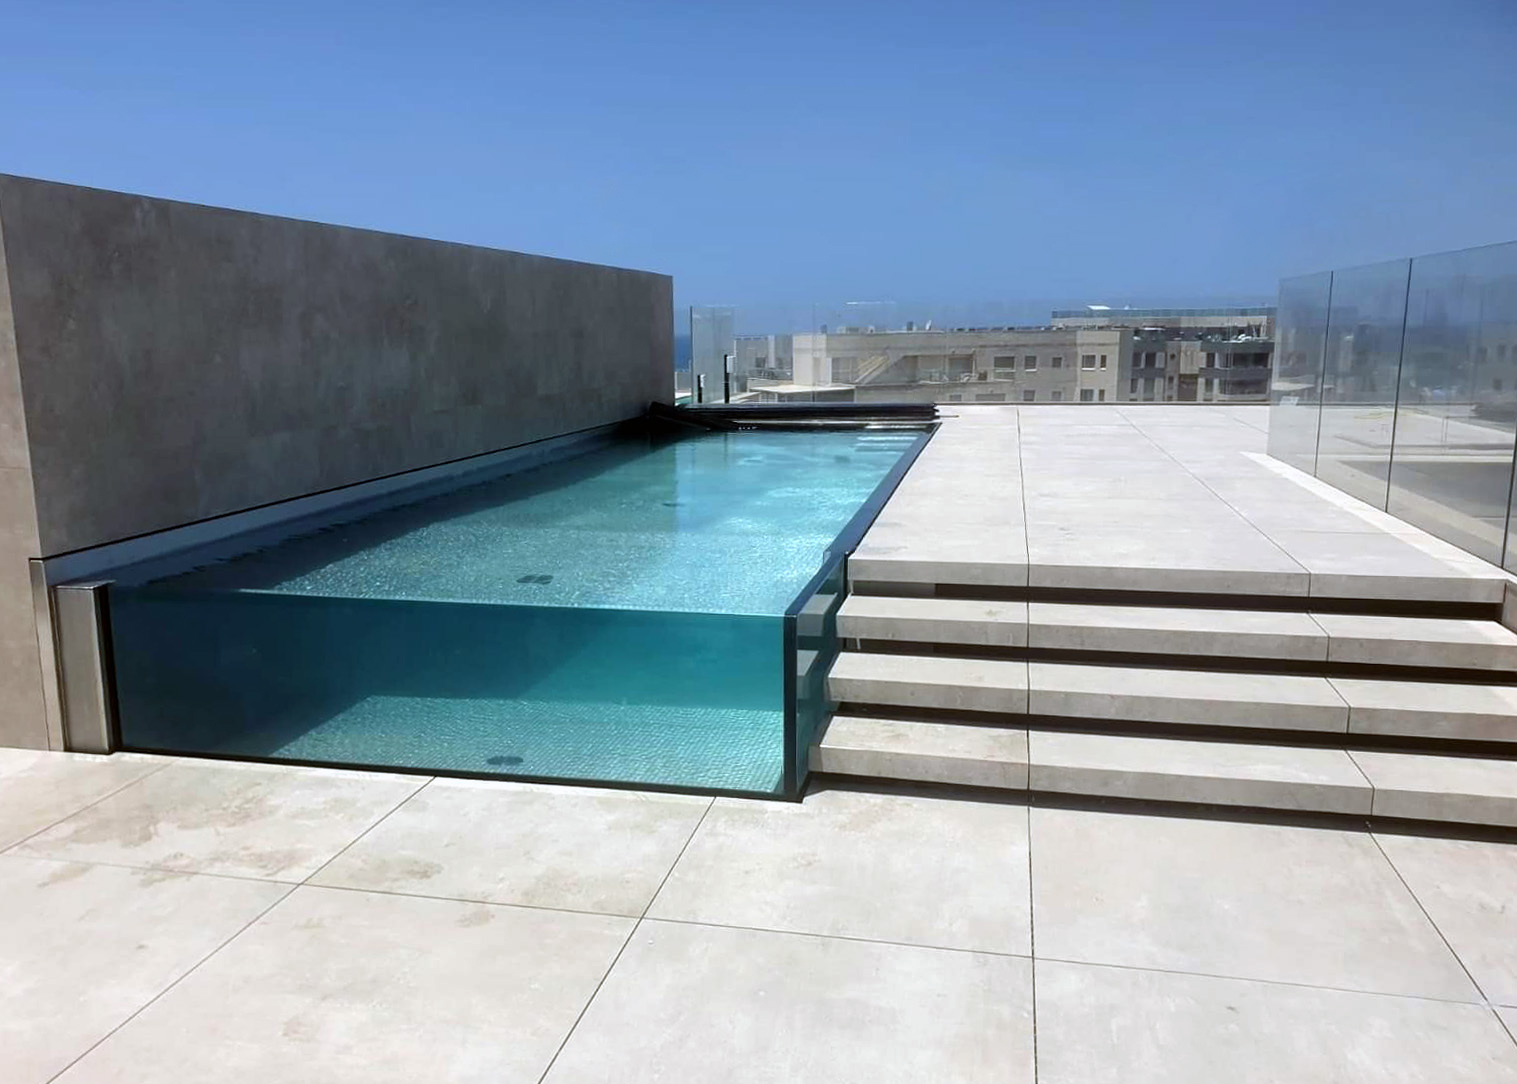 Luxusní střešní nerezový bazén se skleněnými stěnami IMAGINOX